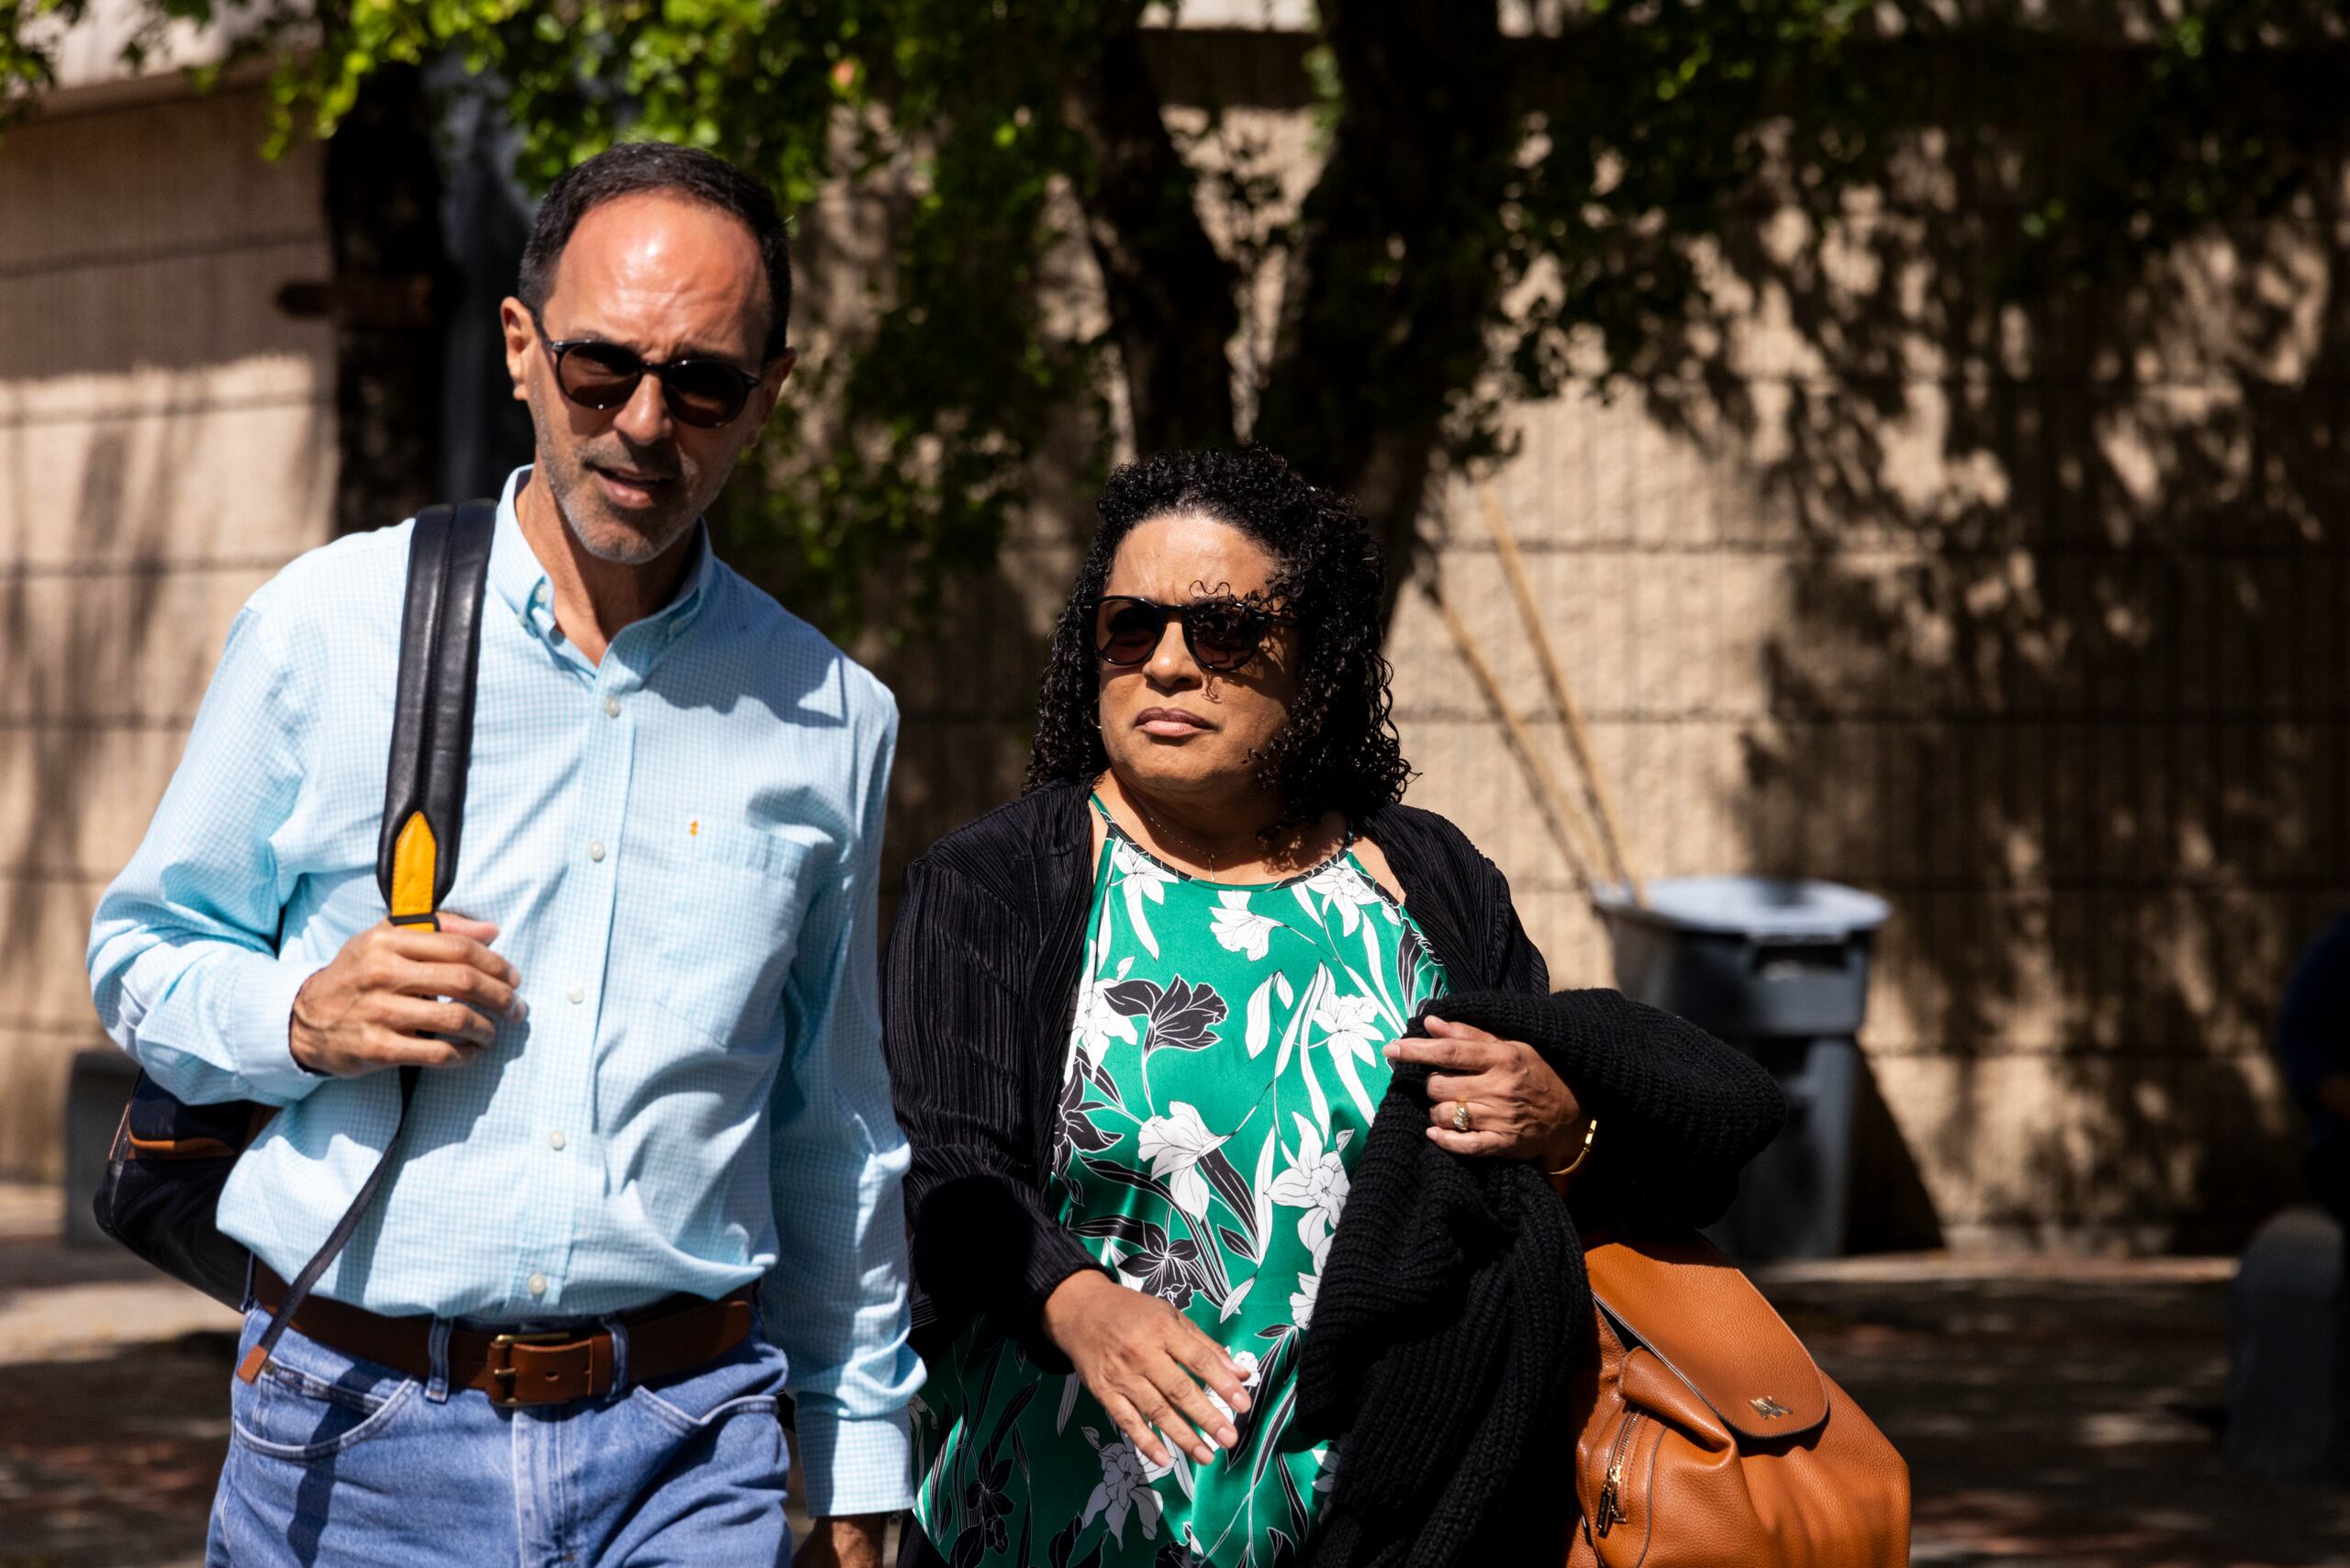 La sentencia de Charbonier Laureano y su esposo, por otra parte, están calendarizadas para el 10 de abril a las 10:00 a.m.